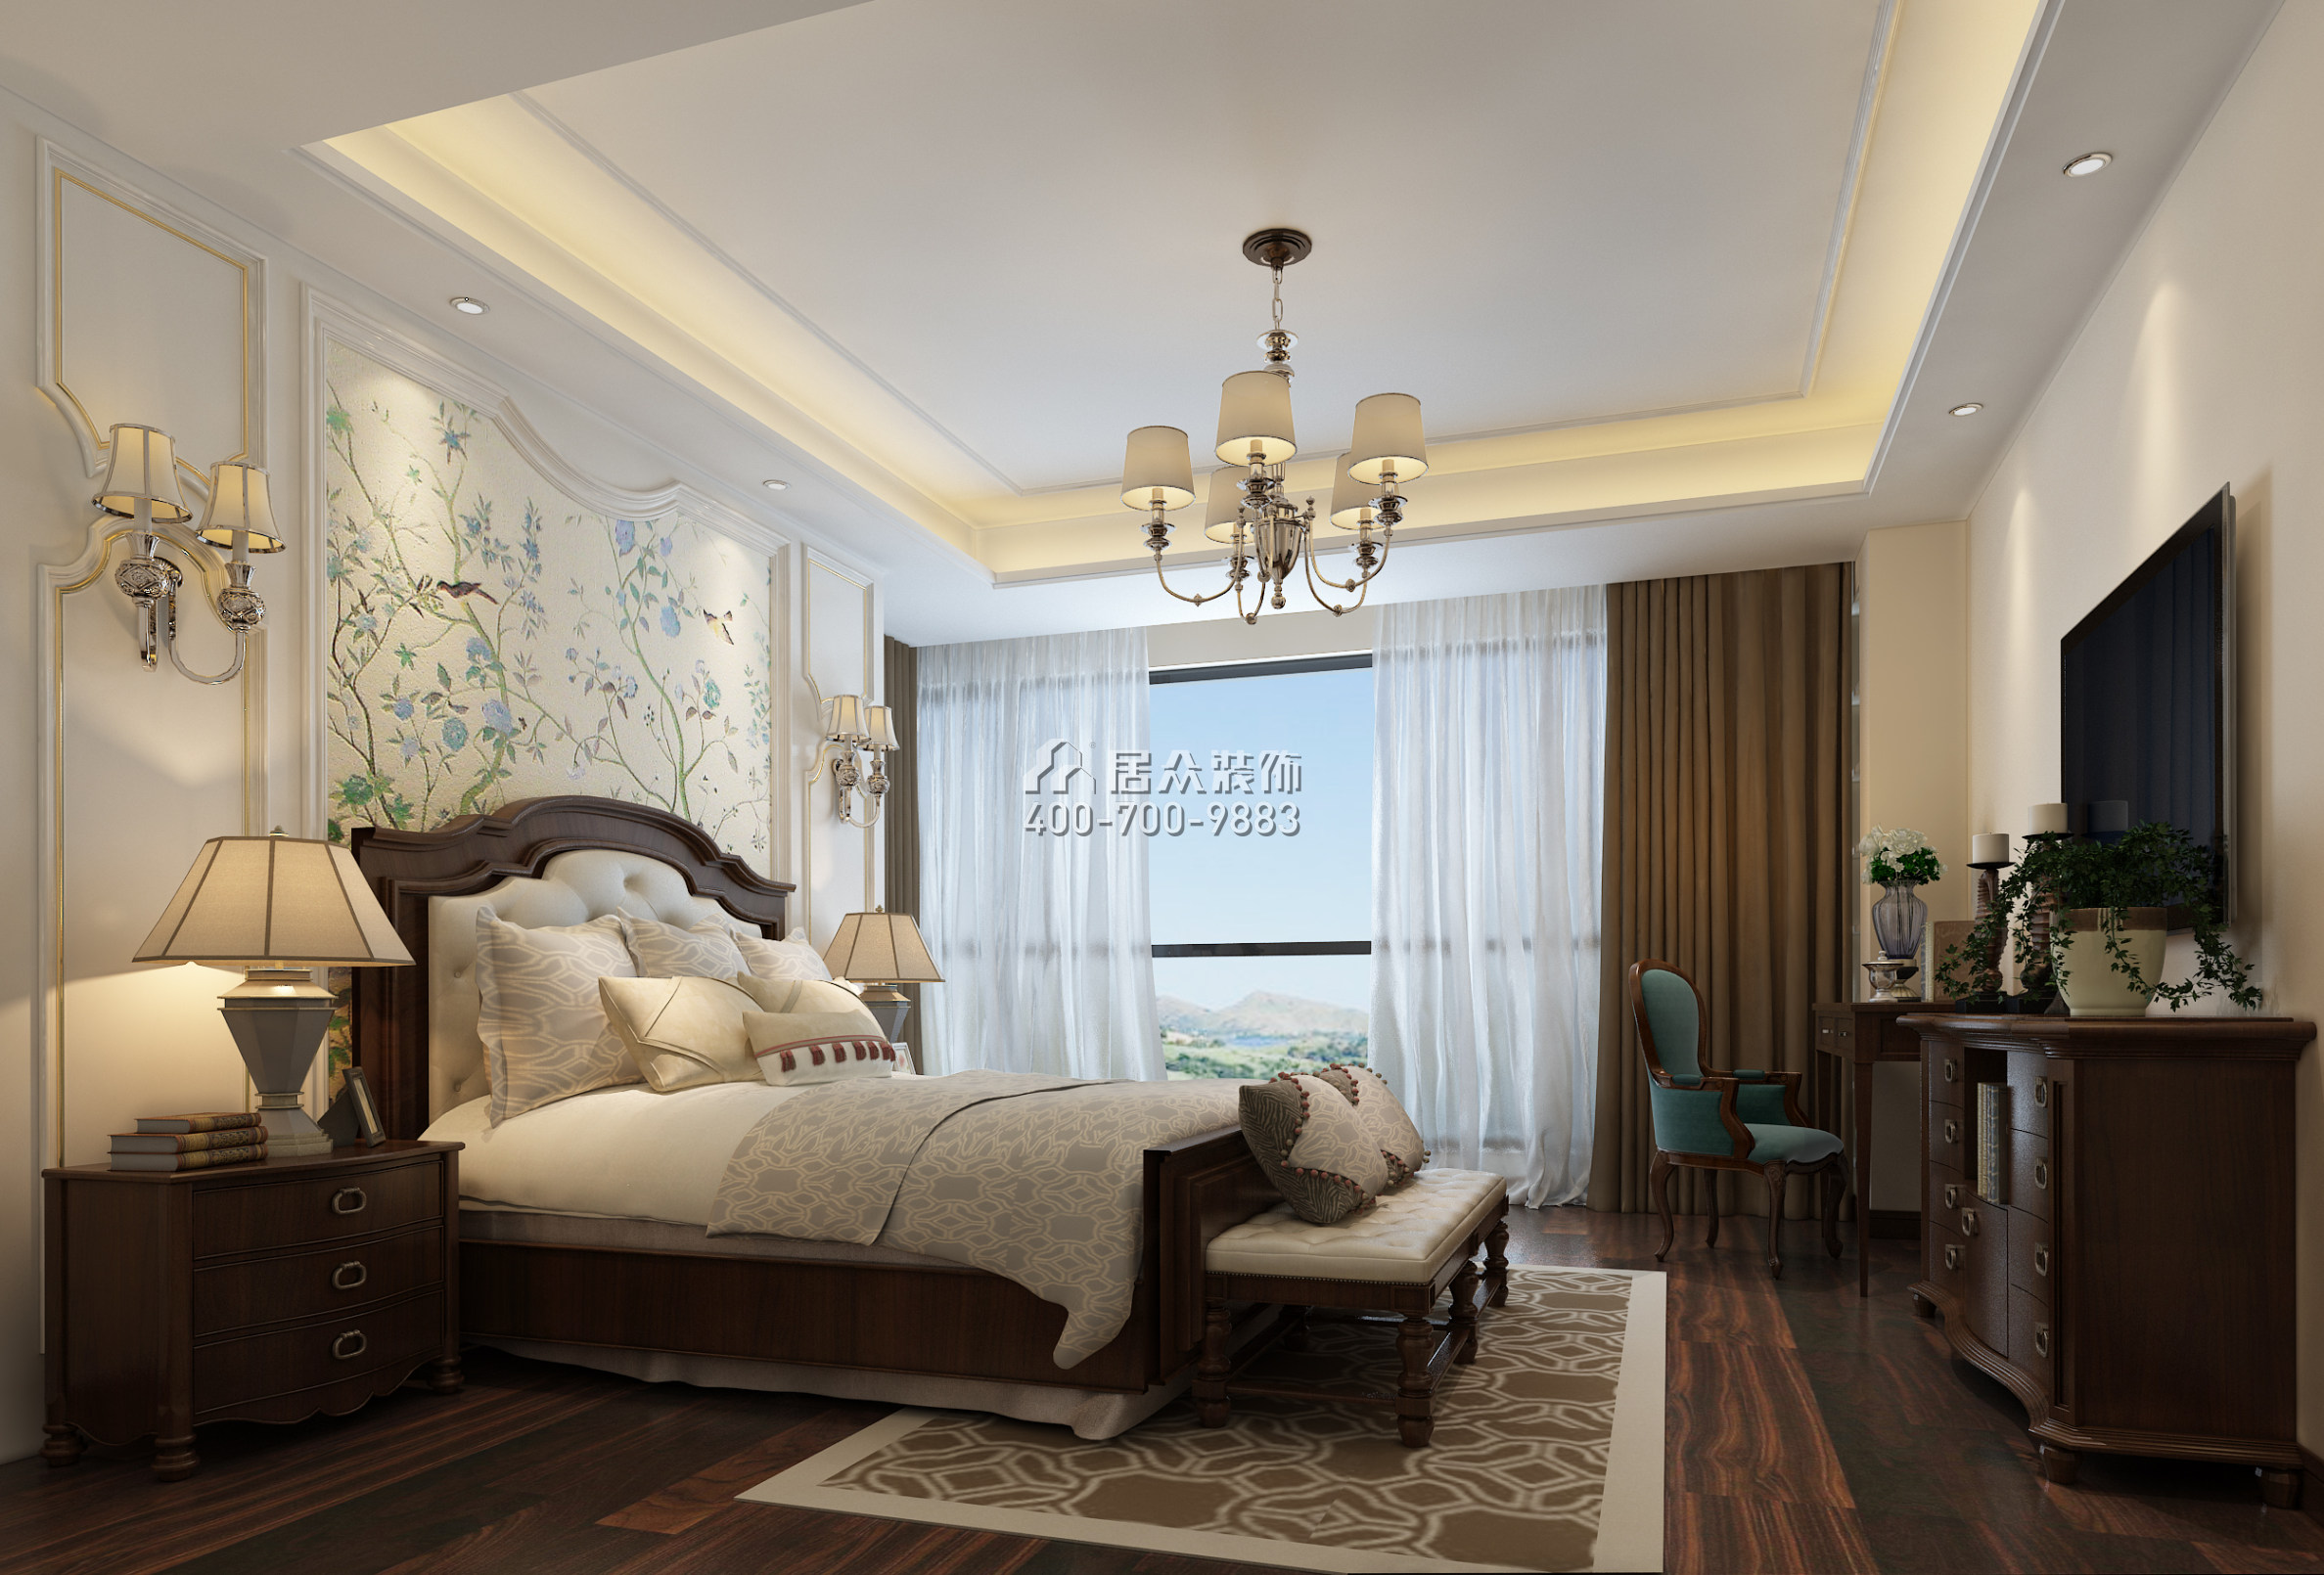 水木丹华143平方米混搭风格平层户型卧室装修效果图